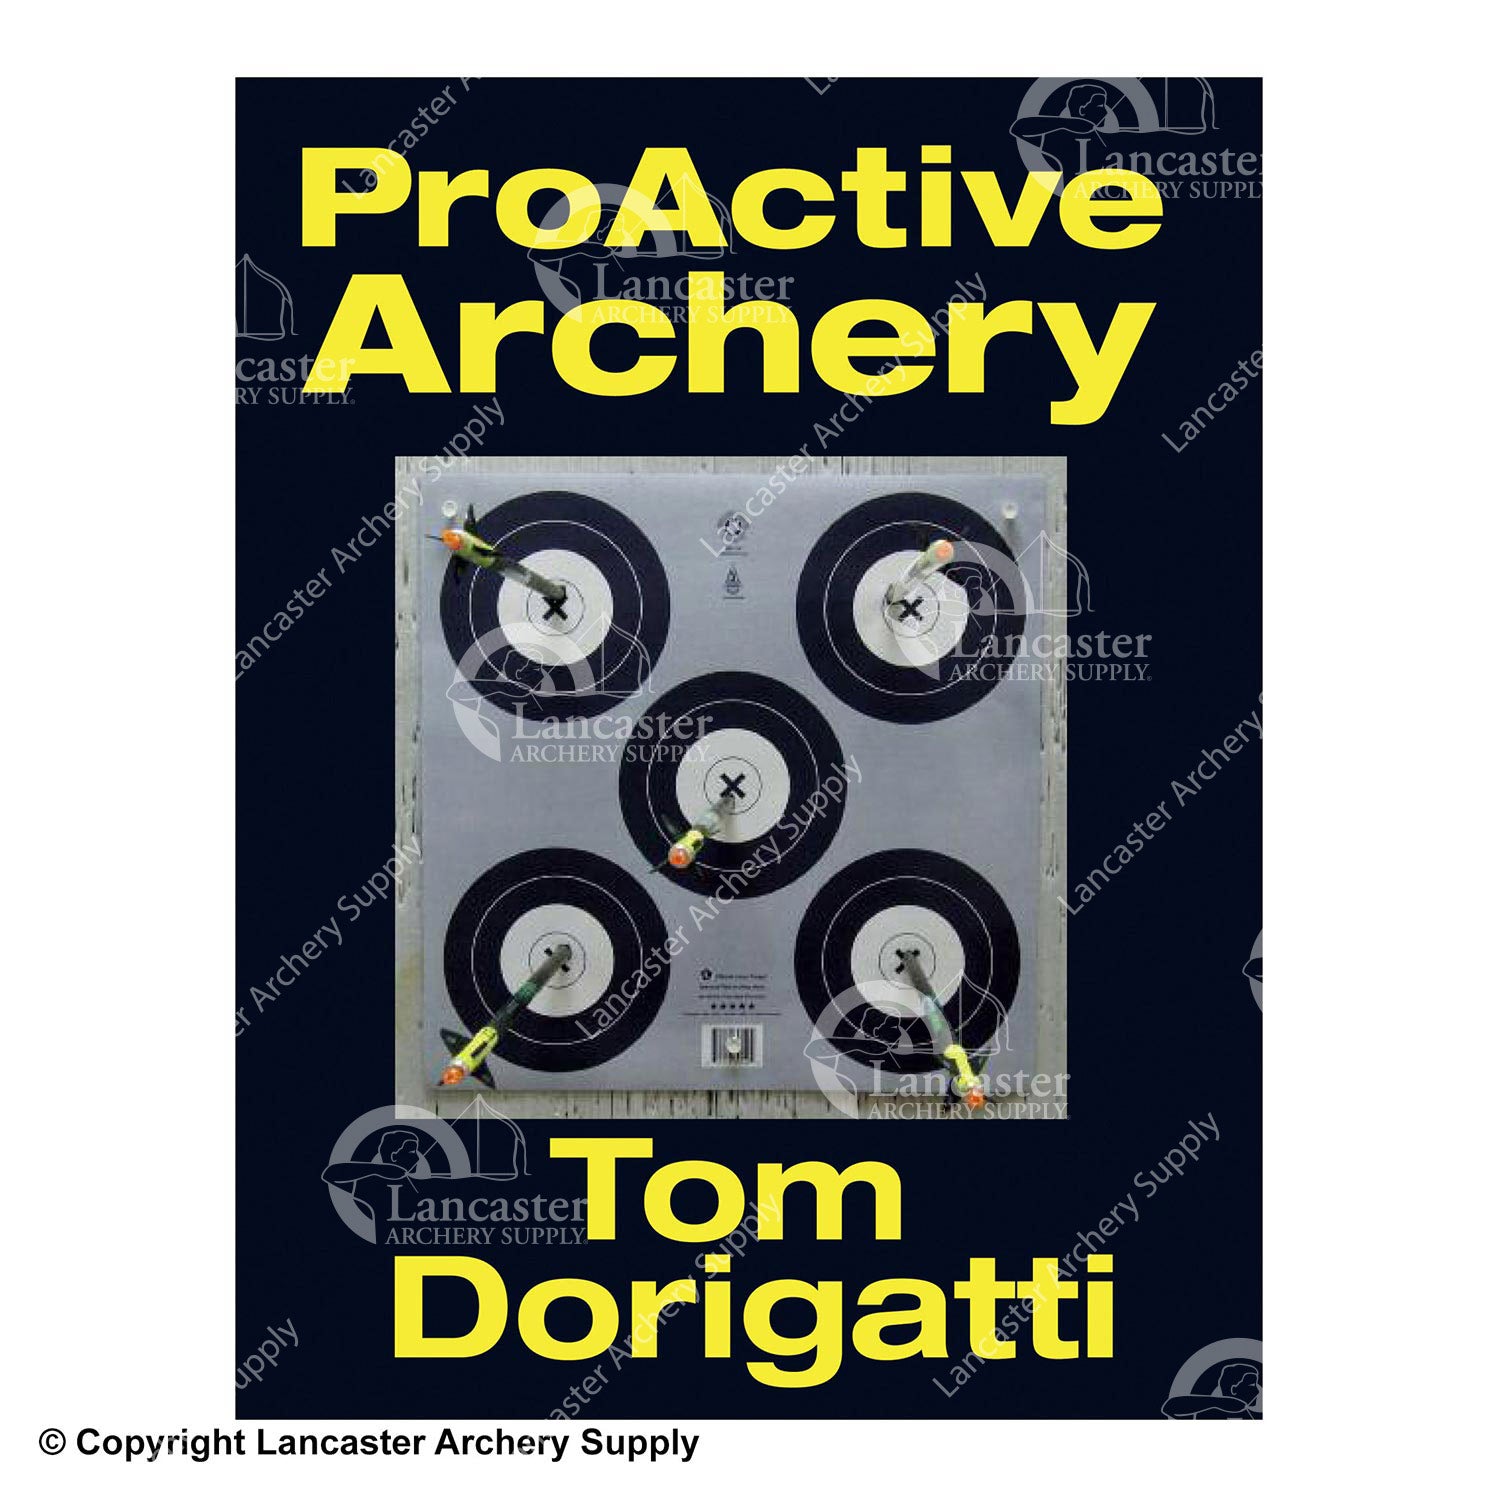 ProActive Archery Book by Tom Dorigatti